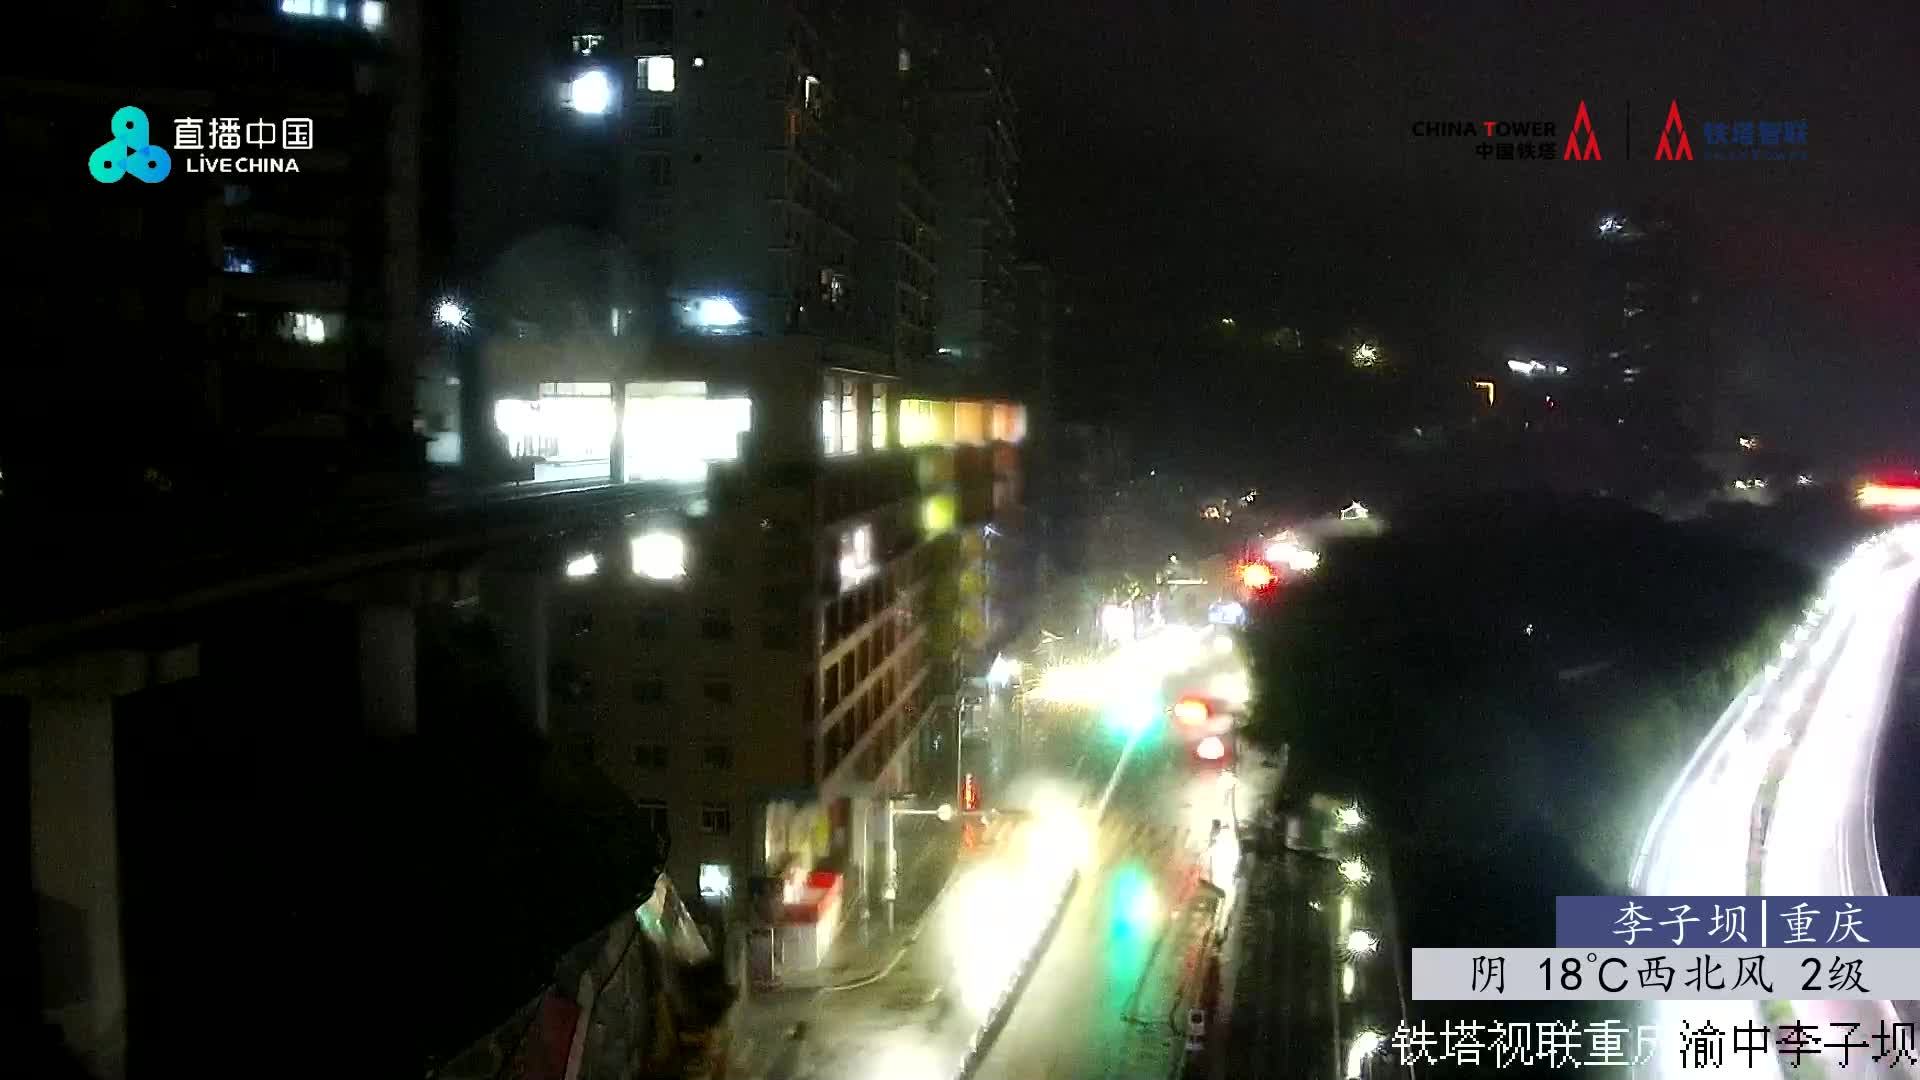 Chongqing Lu. 00:32